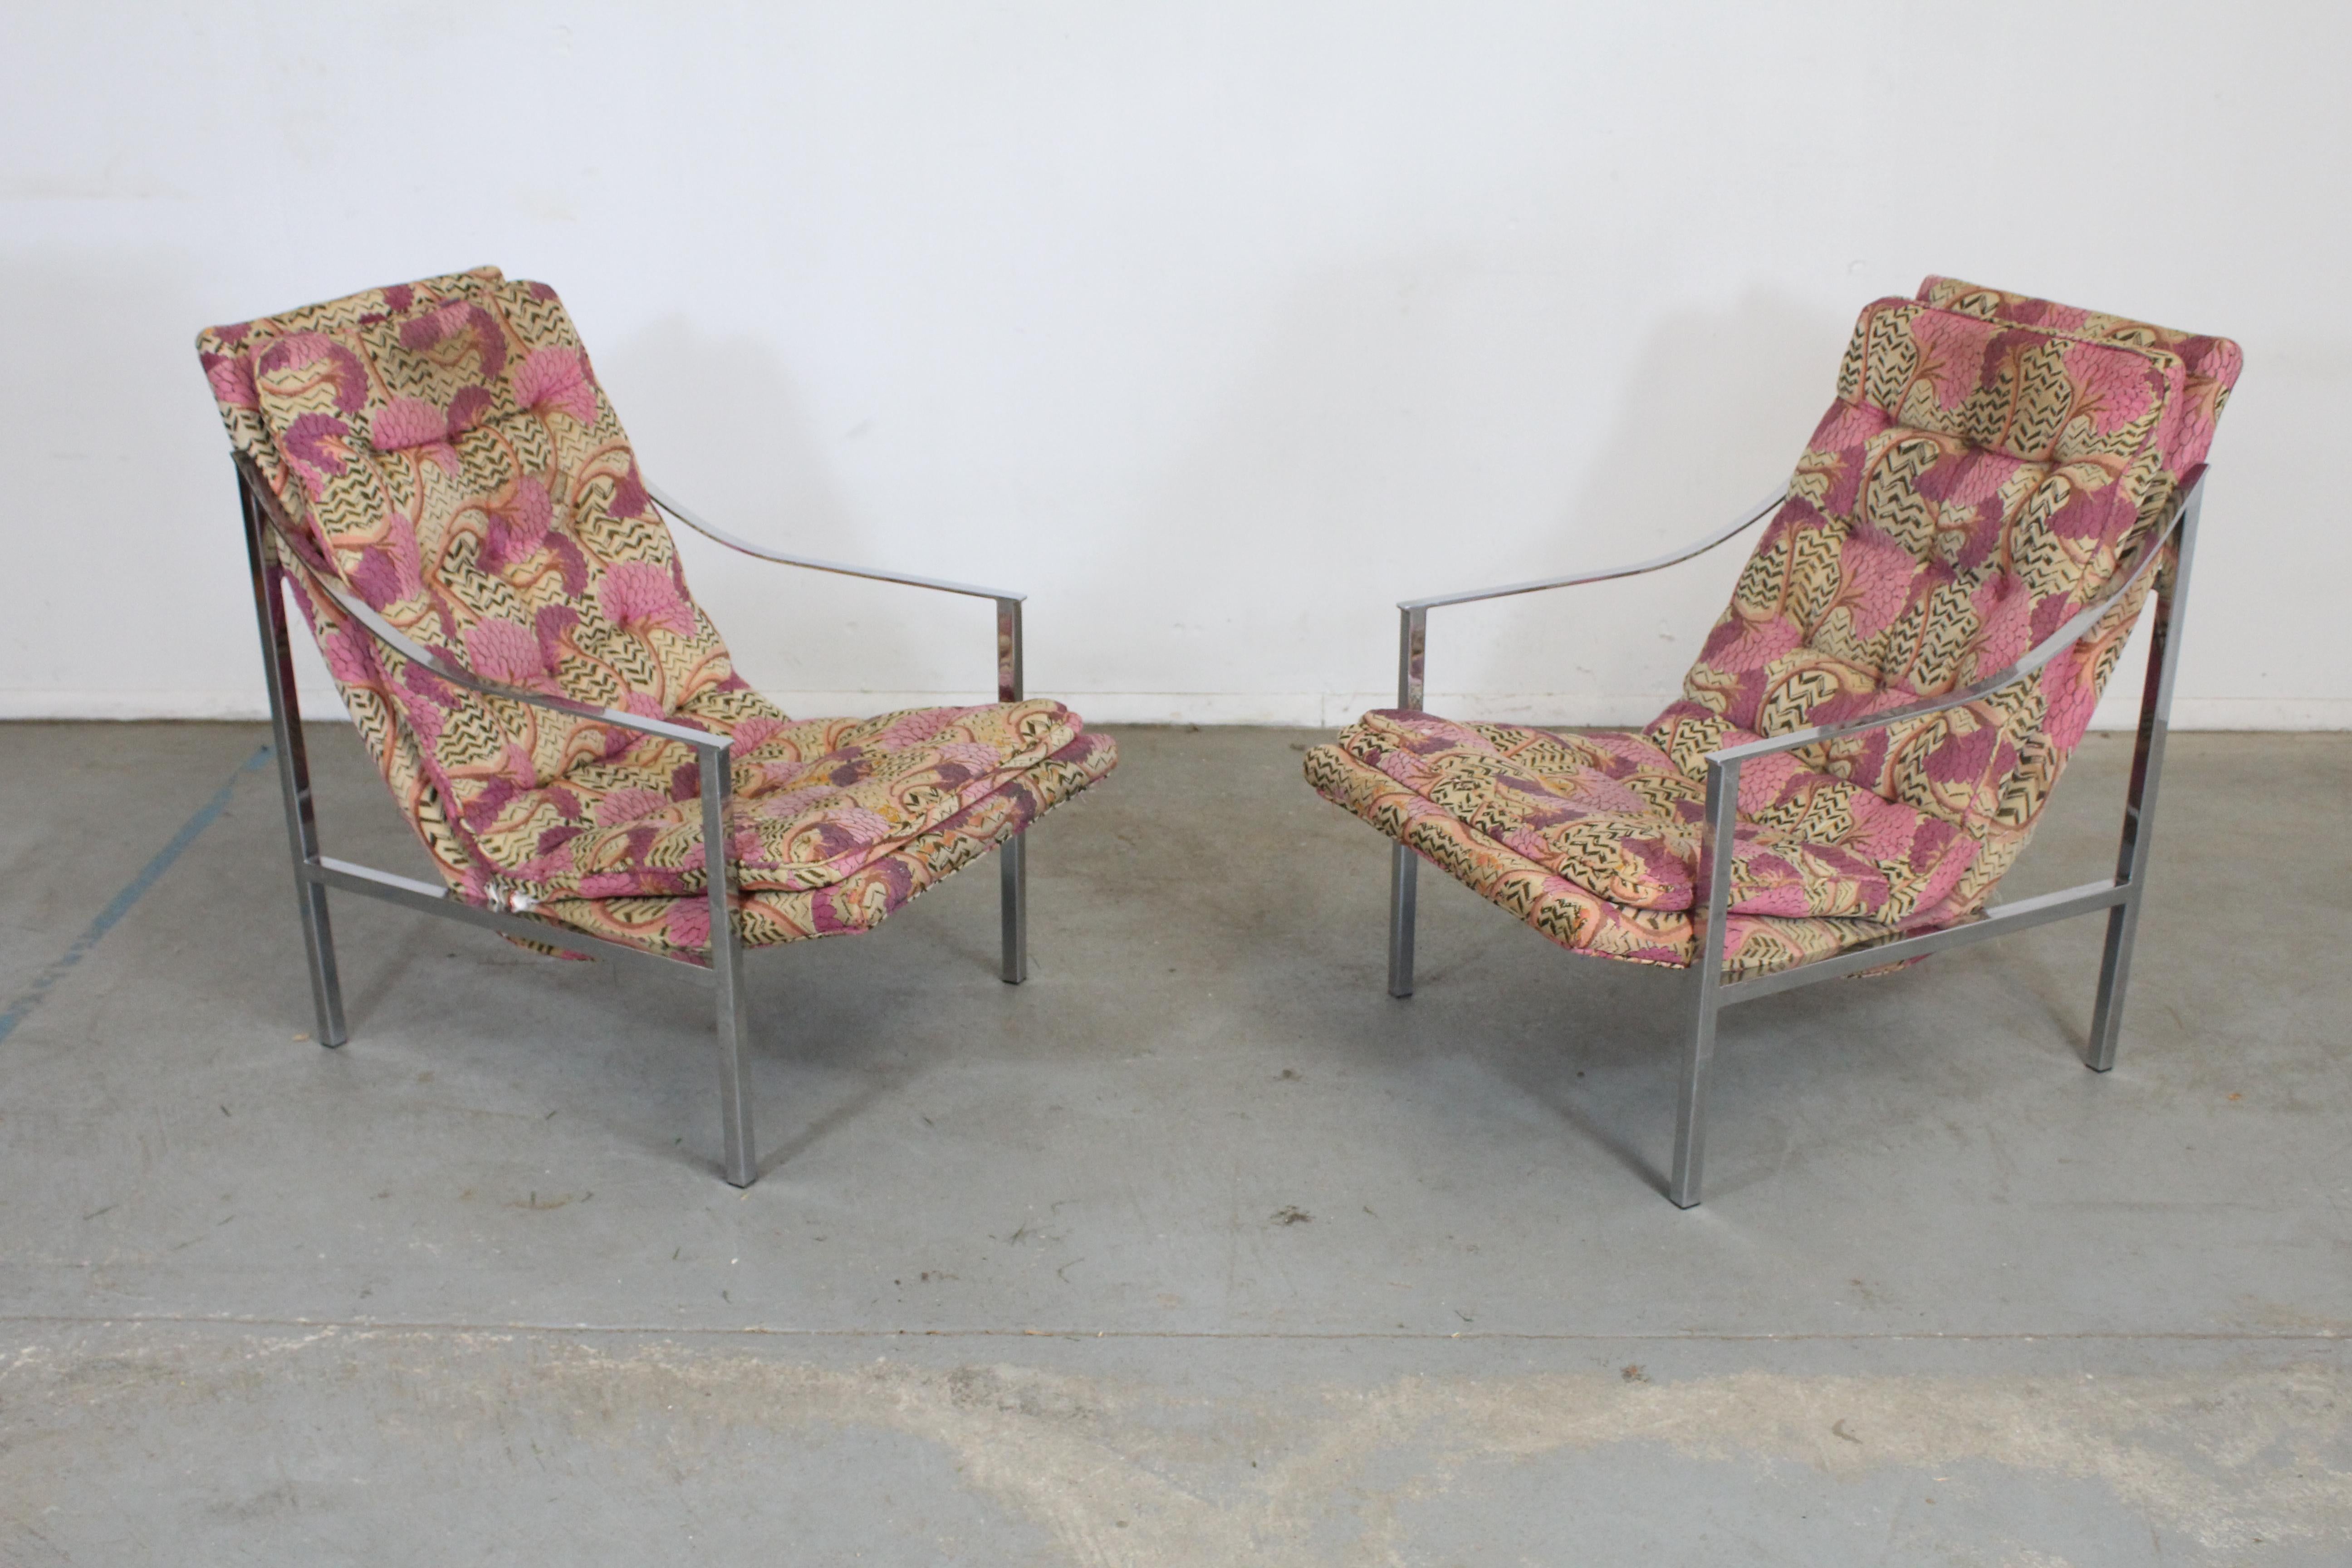 Paire de chaises longues chromées de style Milo Baughman, datant du milieu du siècle dernier.

Cette paire de chaises longues modernes du milieu du siècle ressemble au style de Milo Baughman. Ces chaises pourraient être retapissées, mais leur